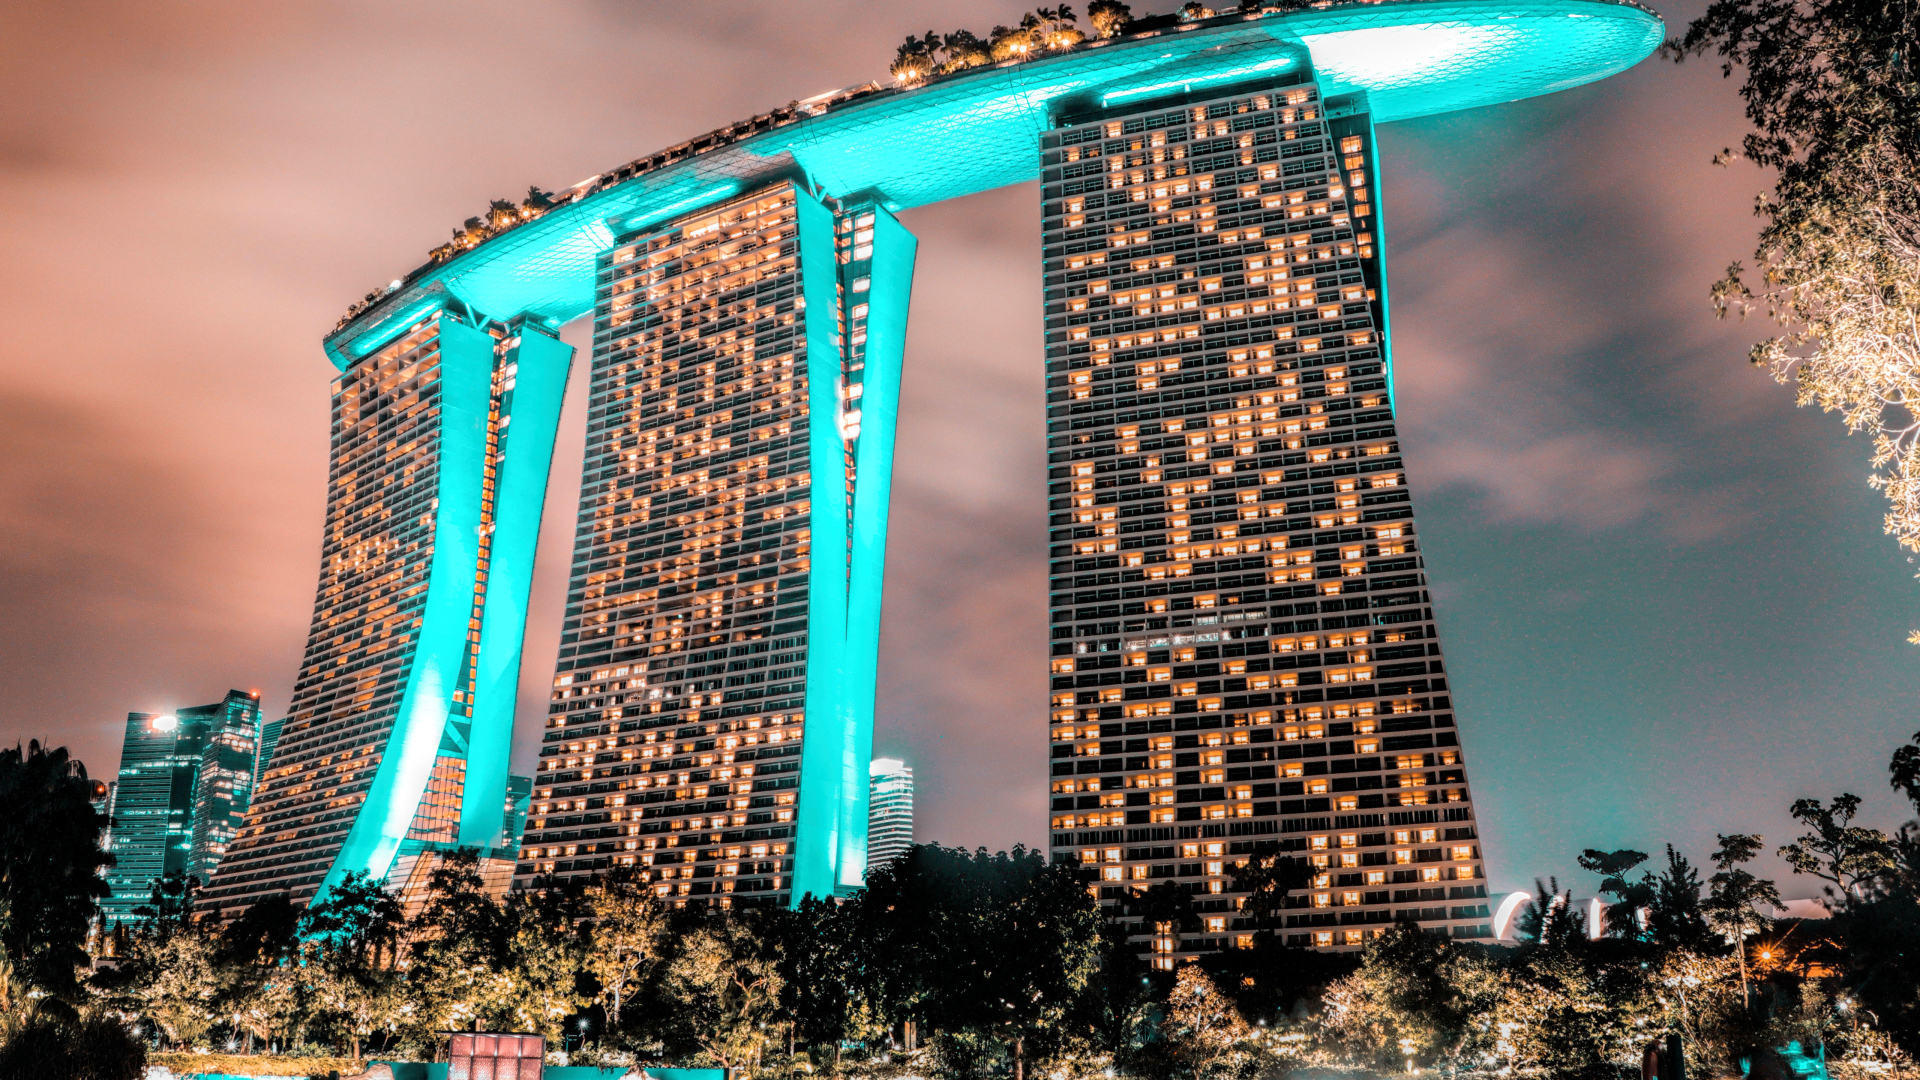 Гостиница Marina Bay Sands вечером, Сингапур. Азия